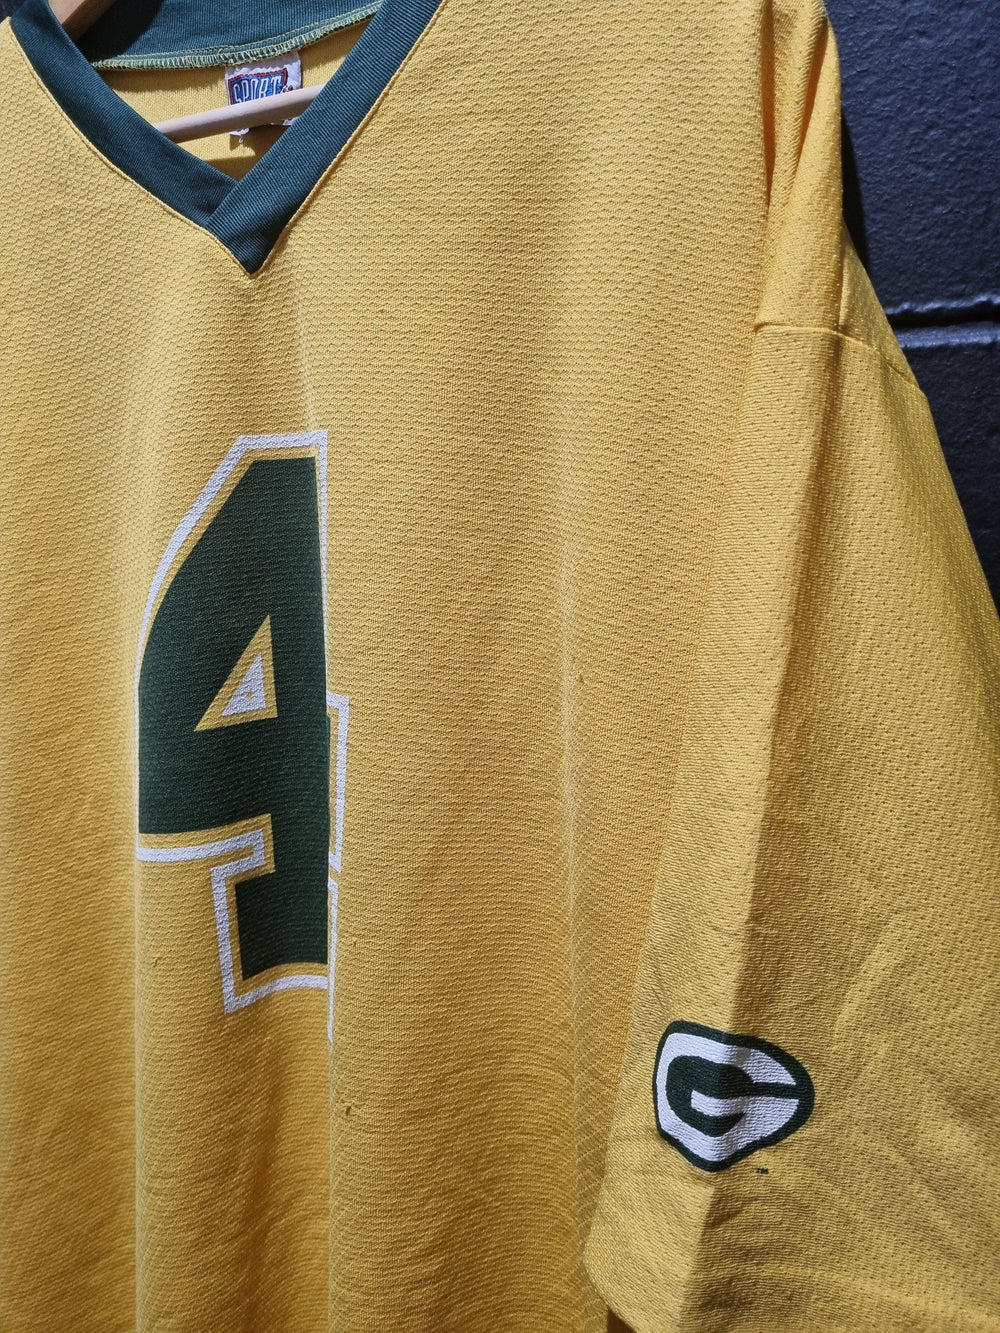 True Vintage Green Bay Packers Favre 1998 NFLP Medium